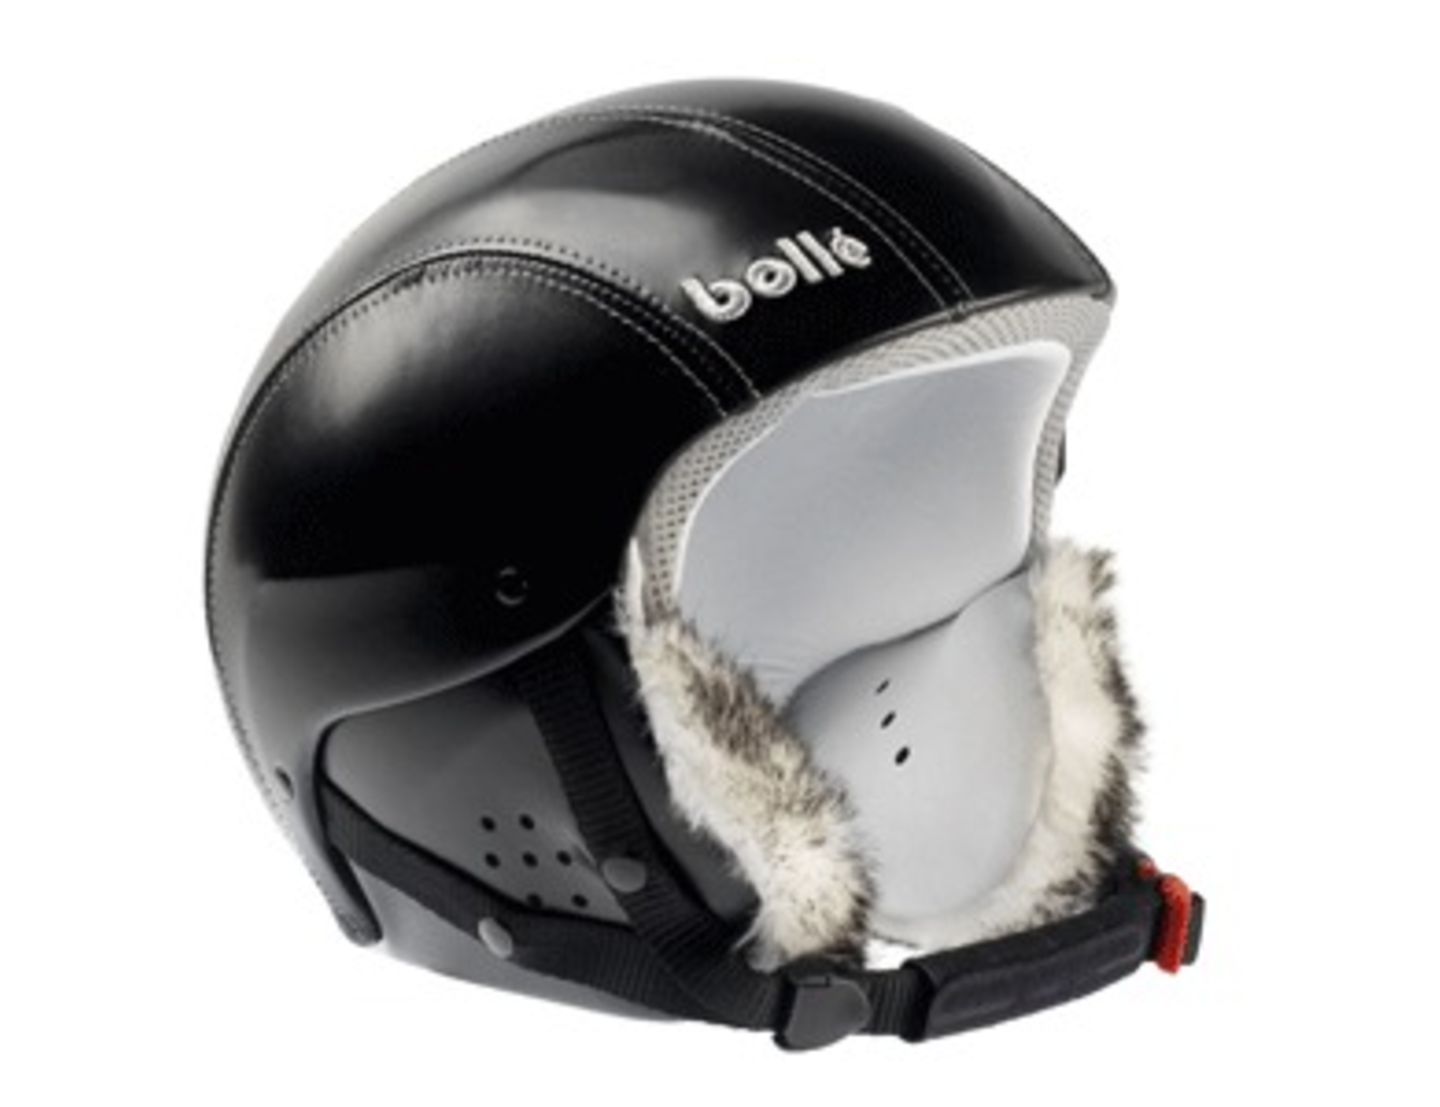 Helm von bollé "Bliss Helmet" für ca. 145 Euro